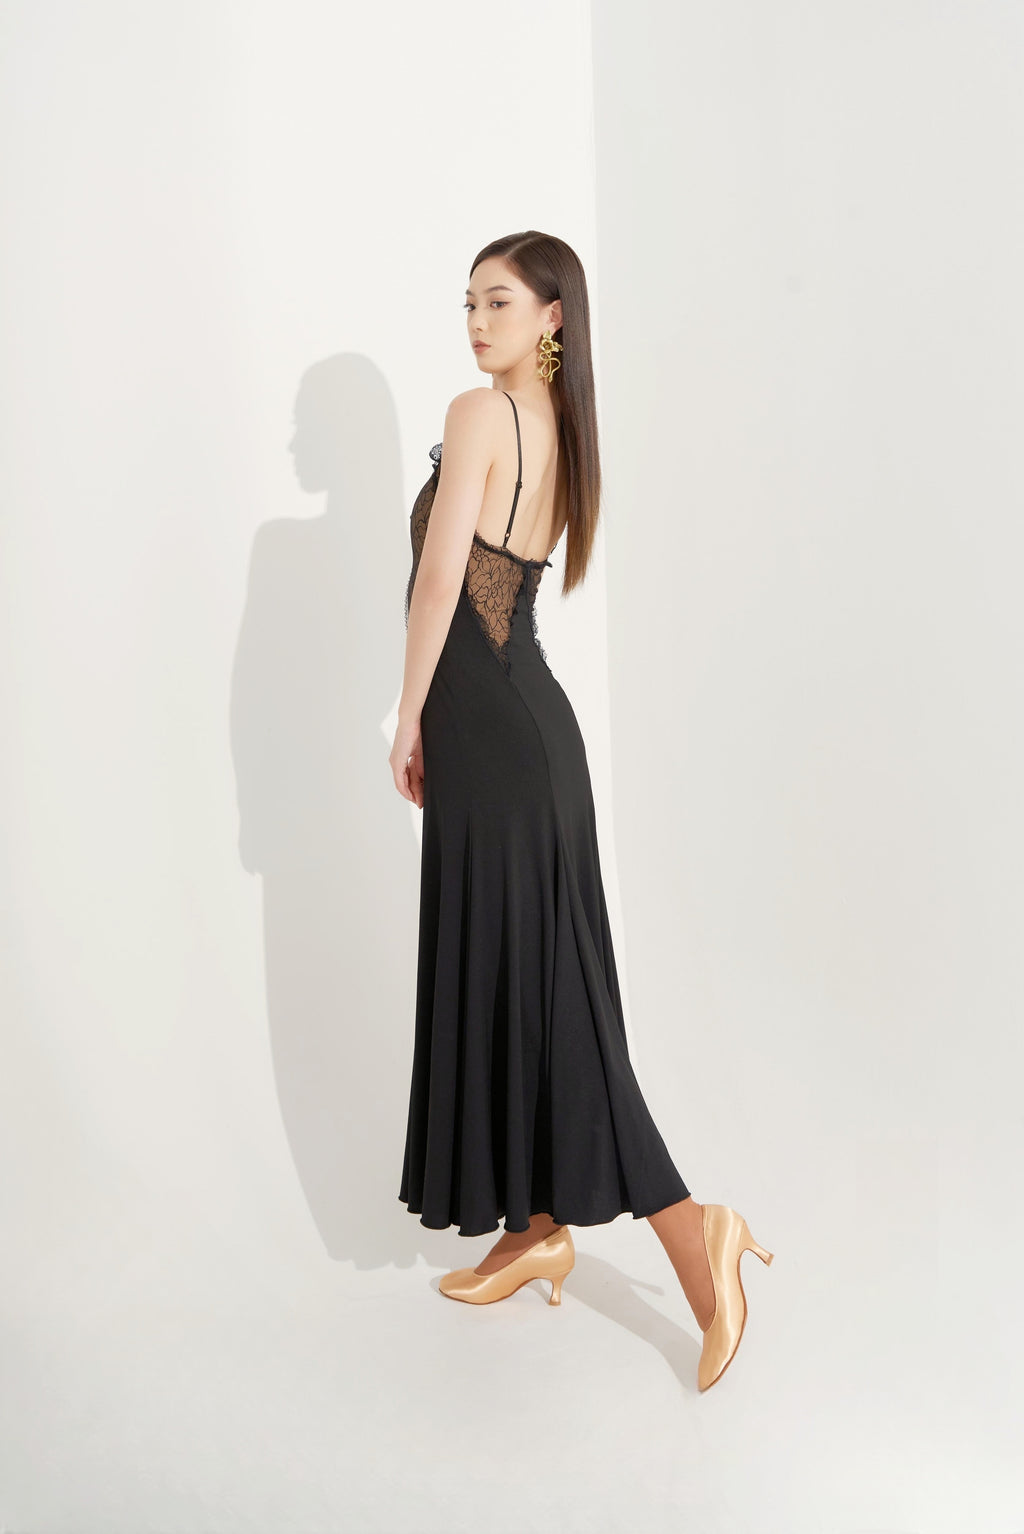 DQ-544 Tailor-Made Nude Black Lace Embellished Godet Dress